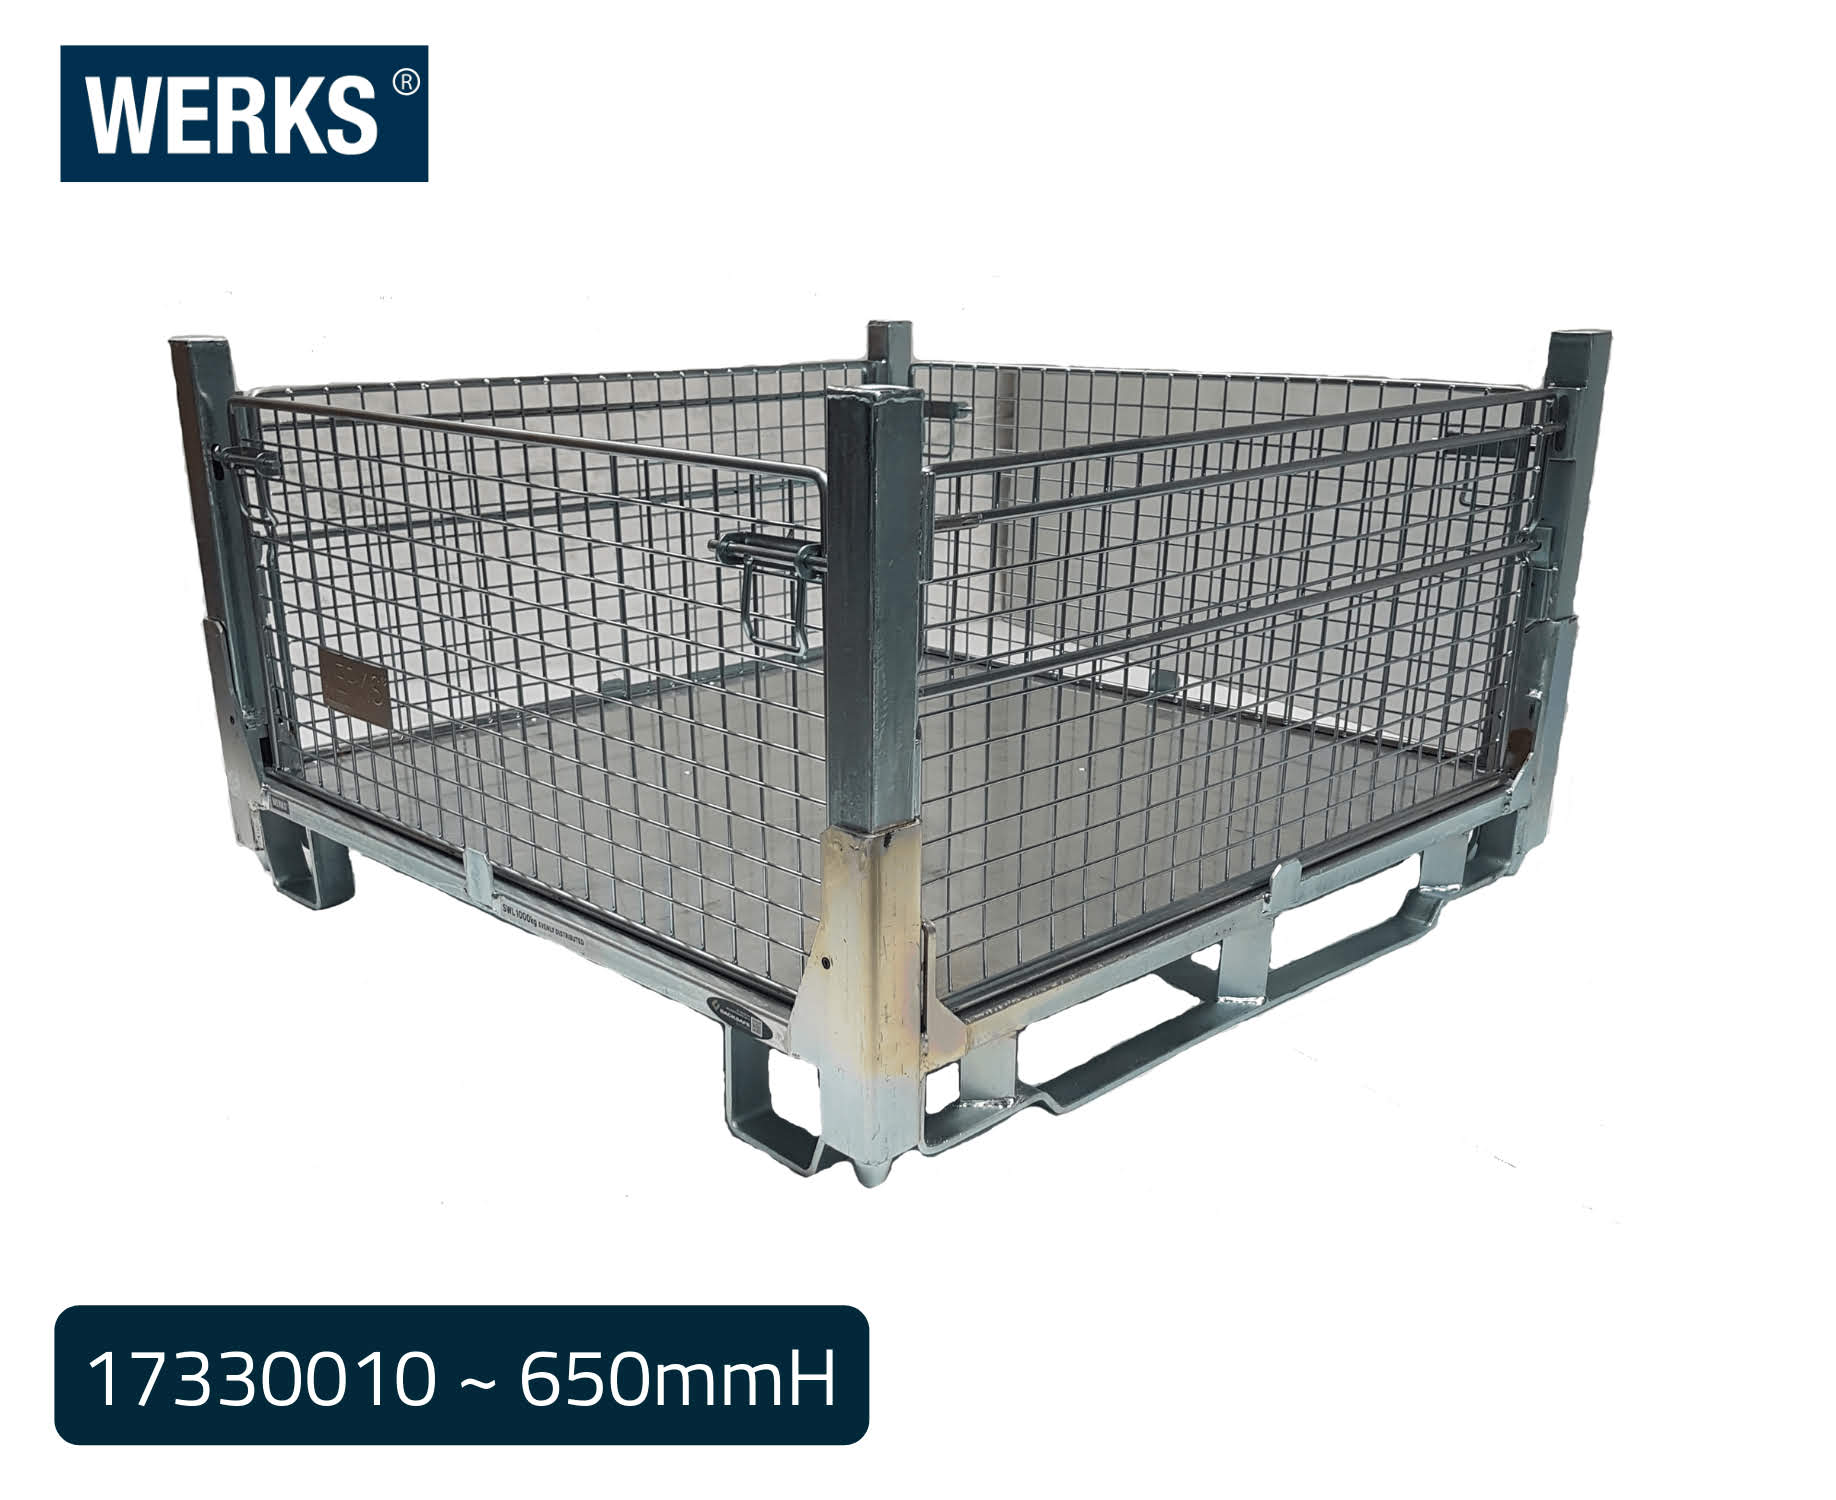 WERKS® Zinc Pallet Cages - Insert Feet Design